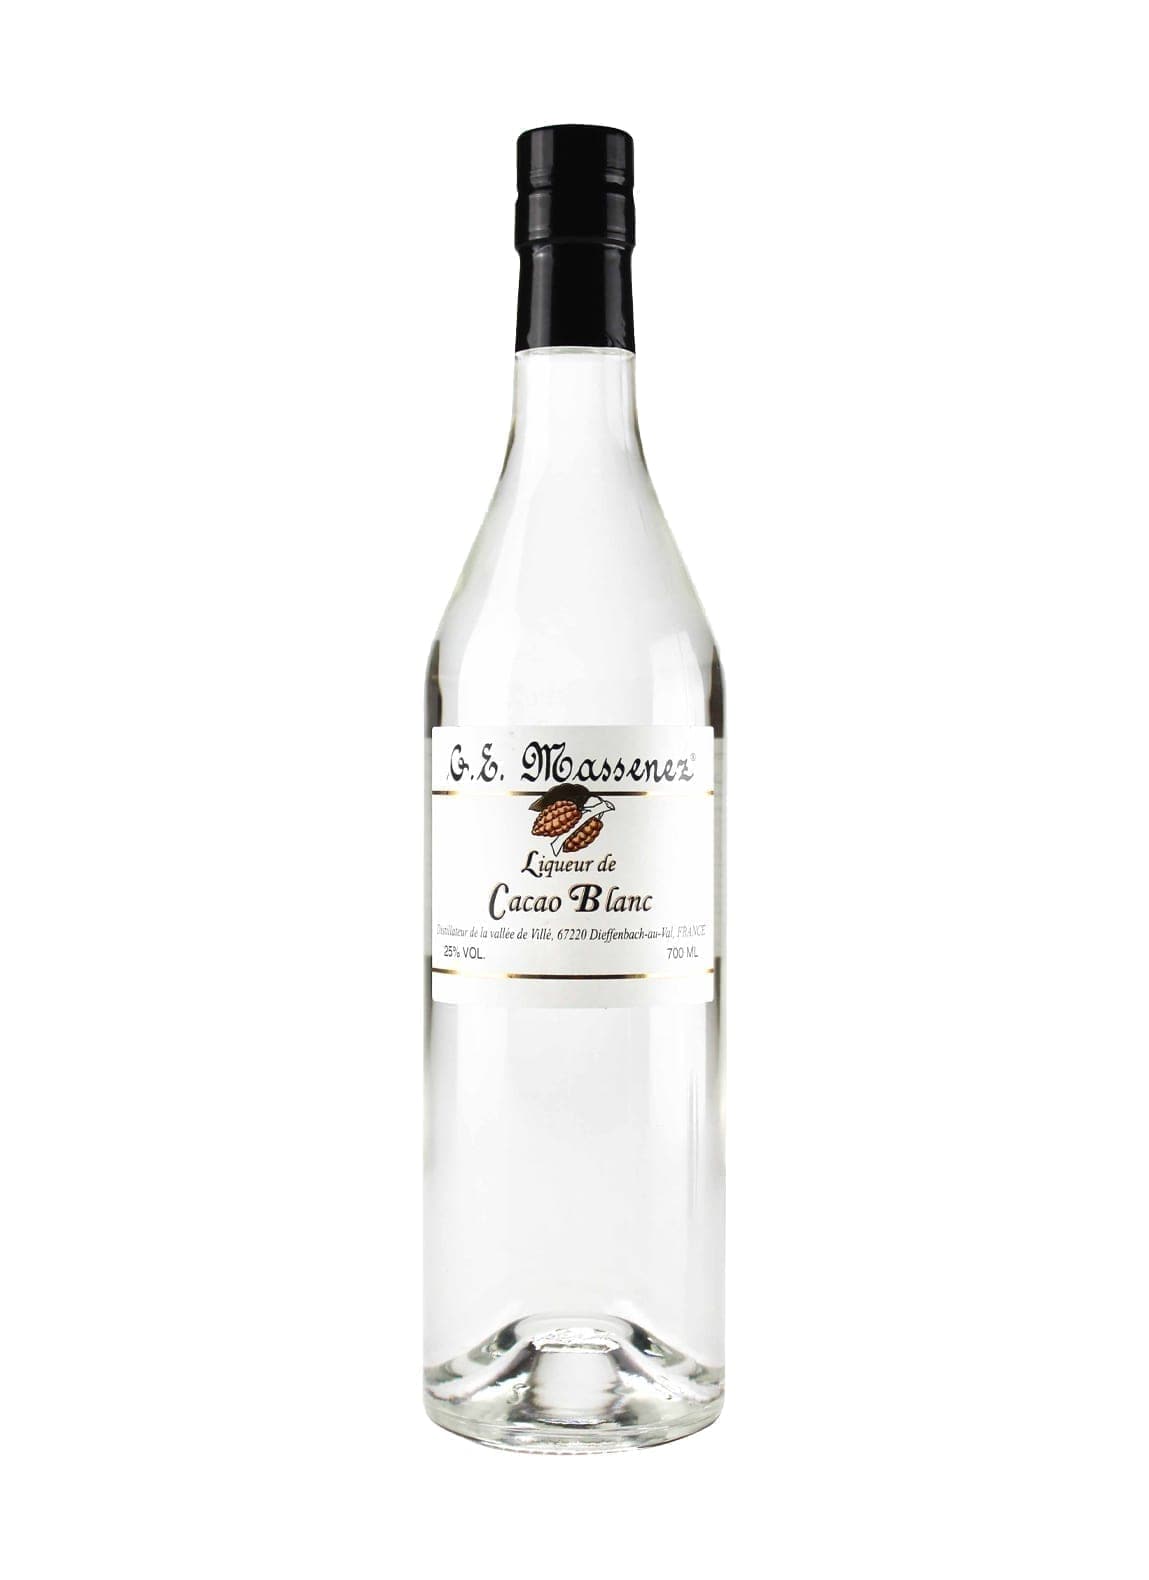 Massenez Liqueur White Cocao (White Chocolate) 25% 700ml | Liqueurs | Shop online at Spirits of France